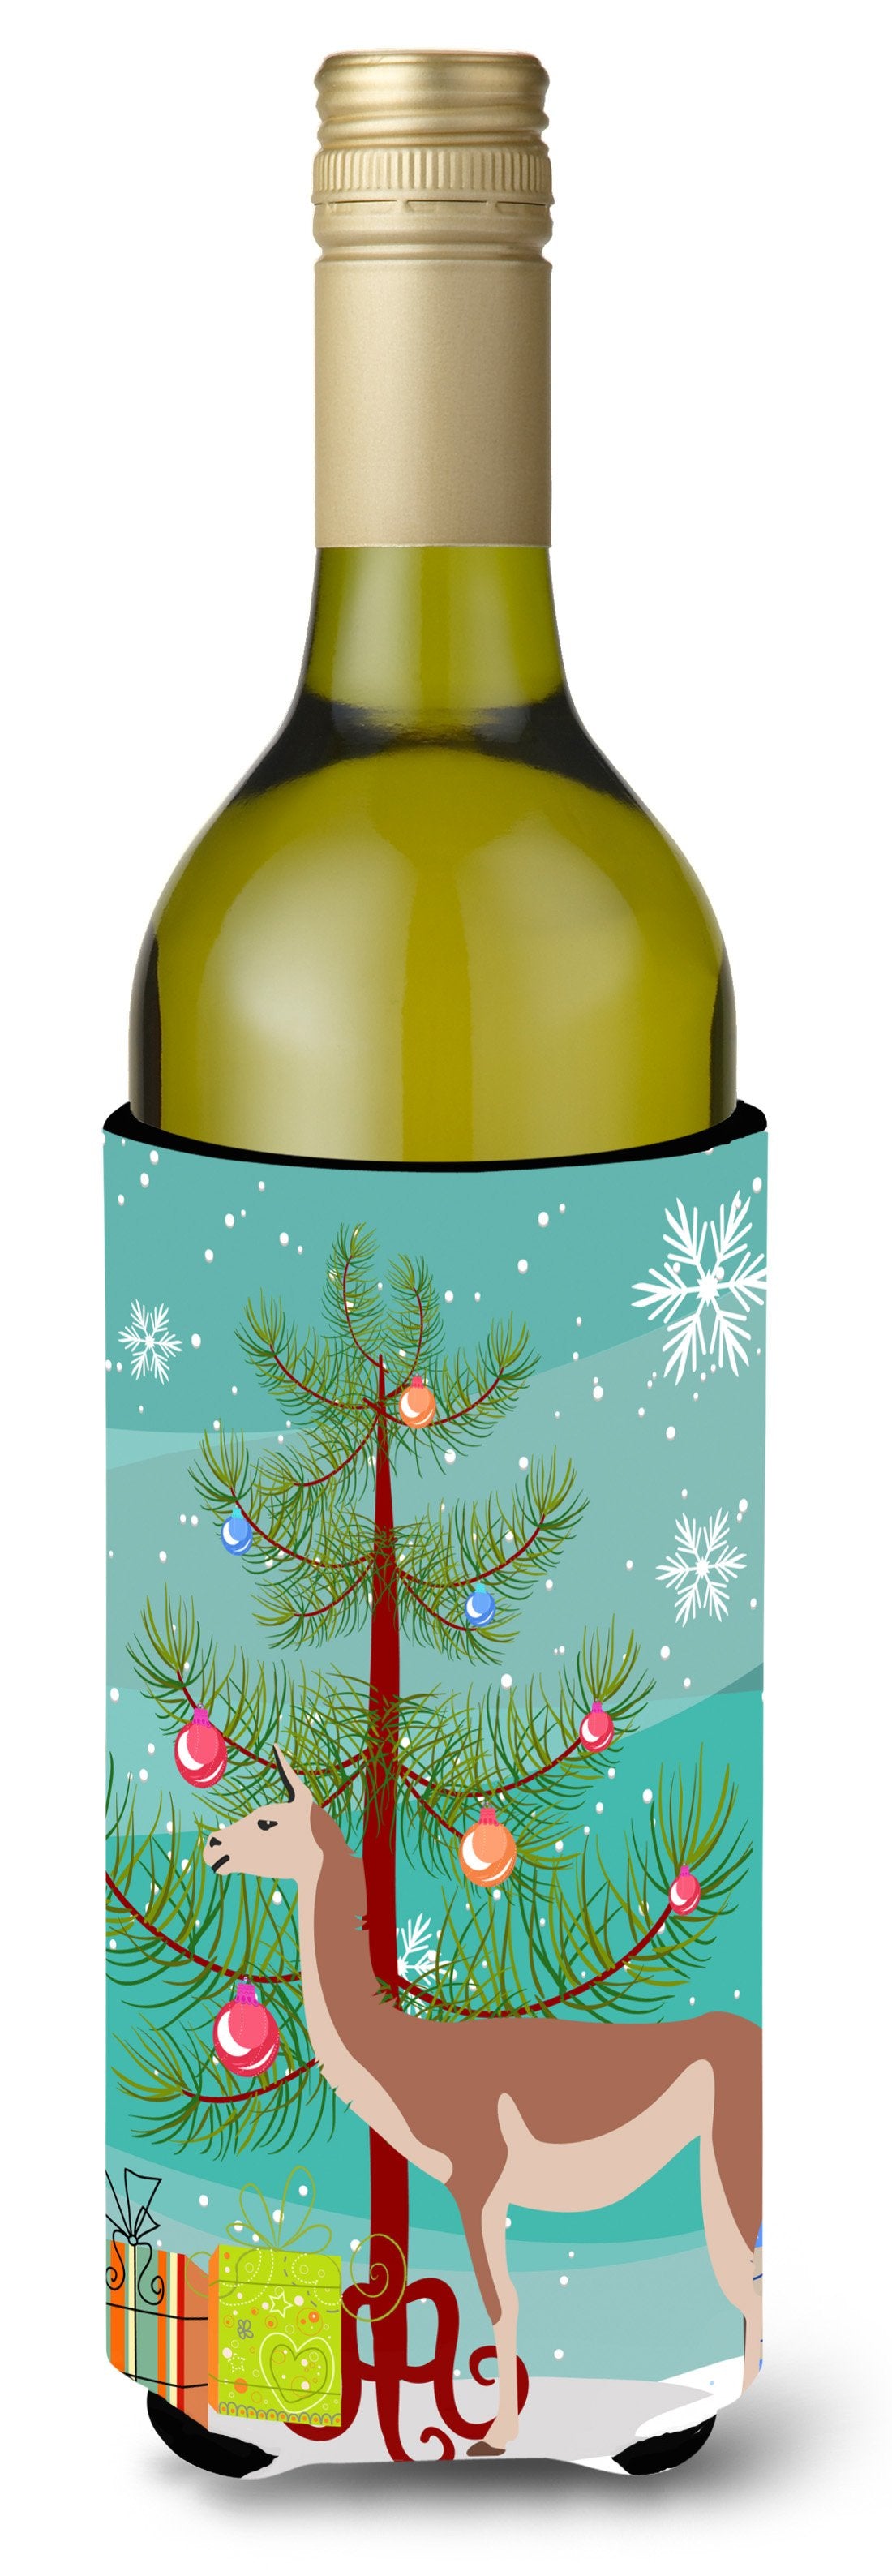 Guanaco Christmas Wine Bottle Beverge Insulator Hugger BB9288LITERK by Caroline's Treasures